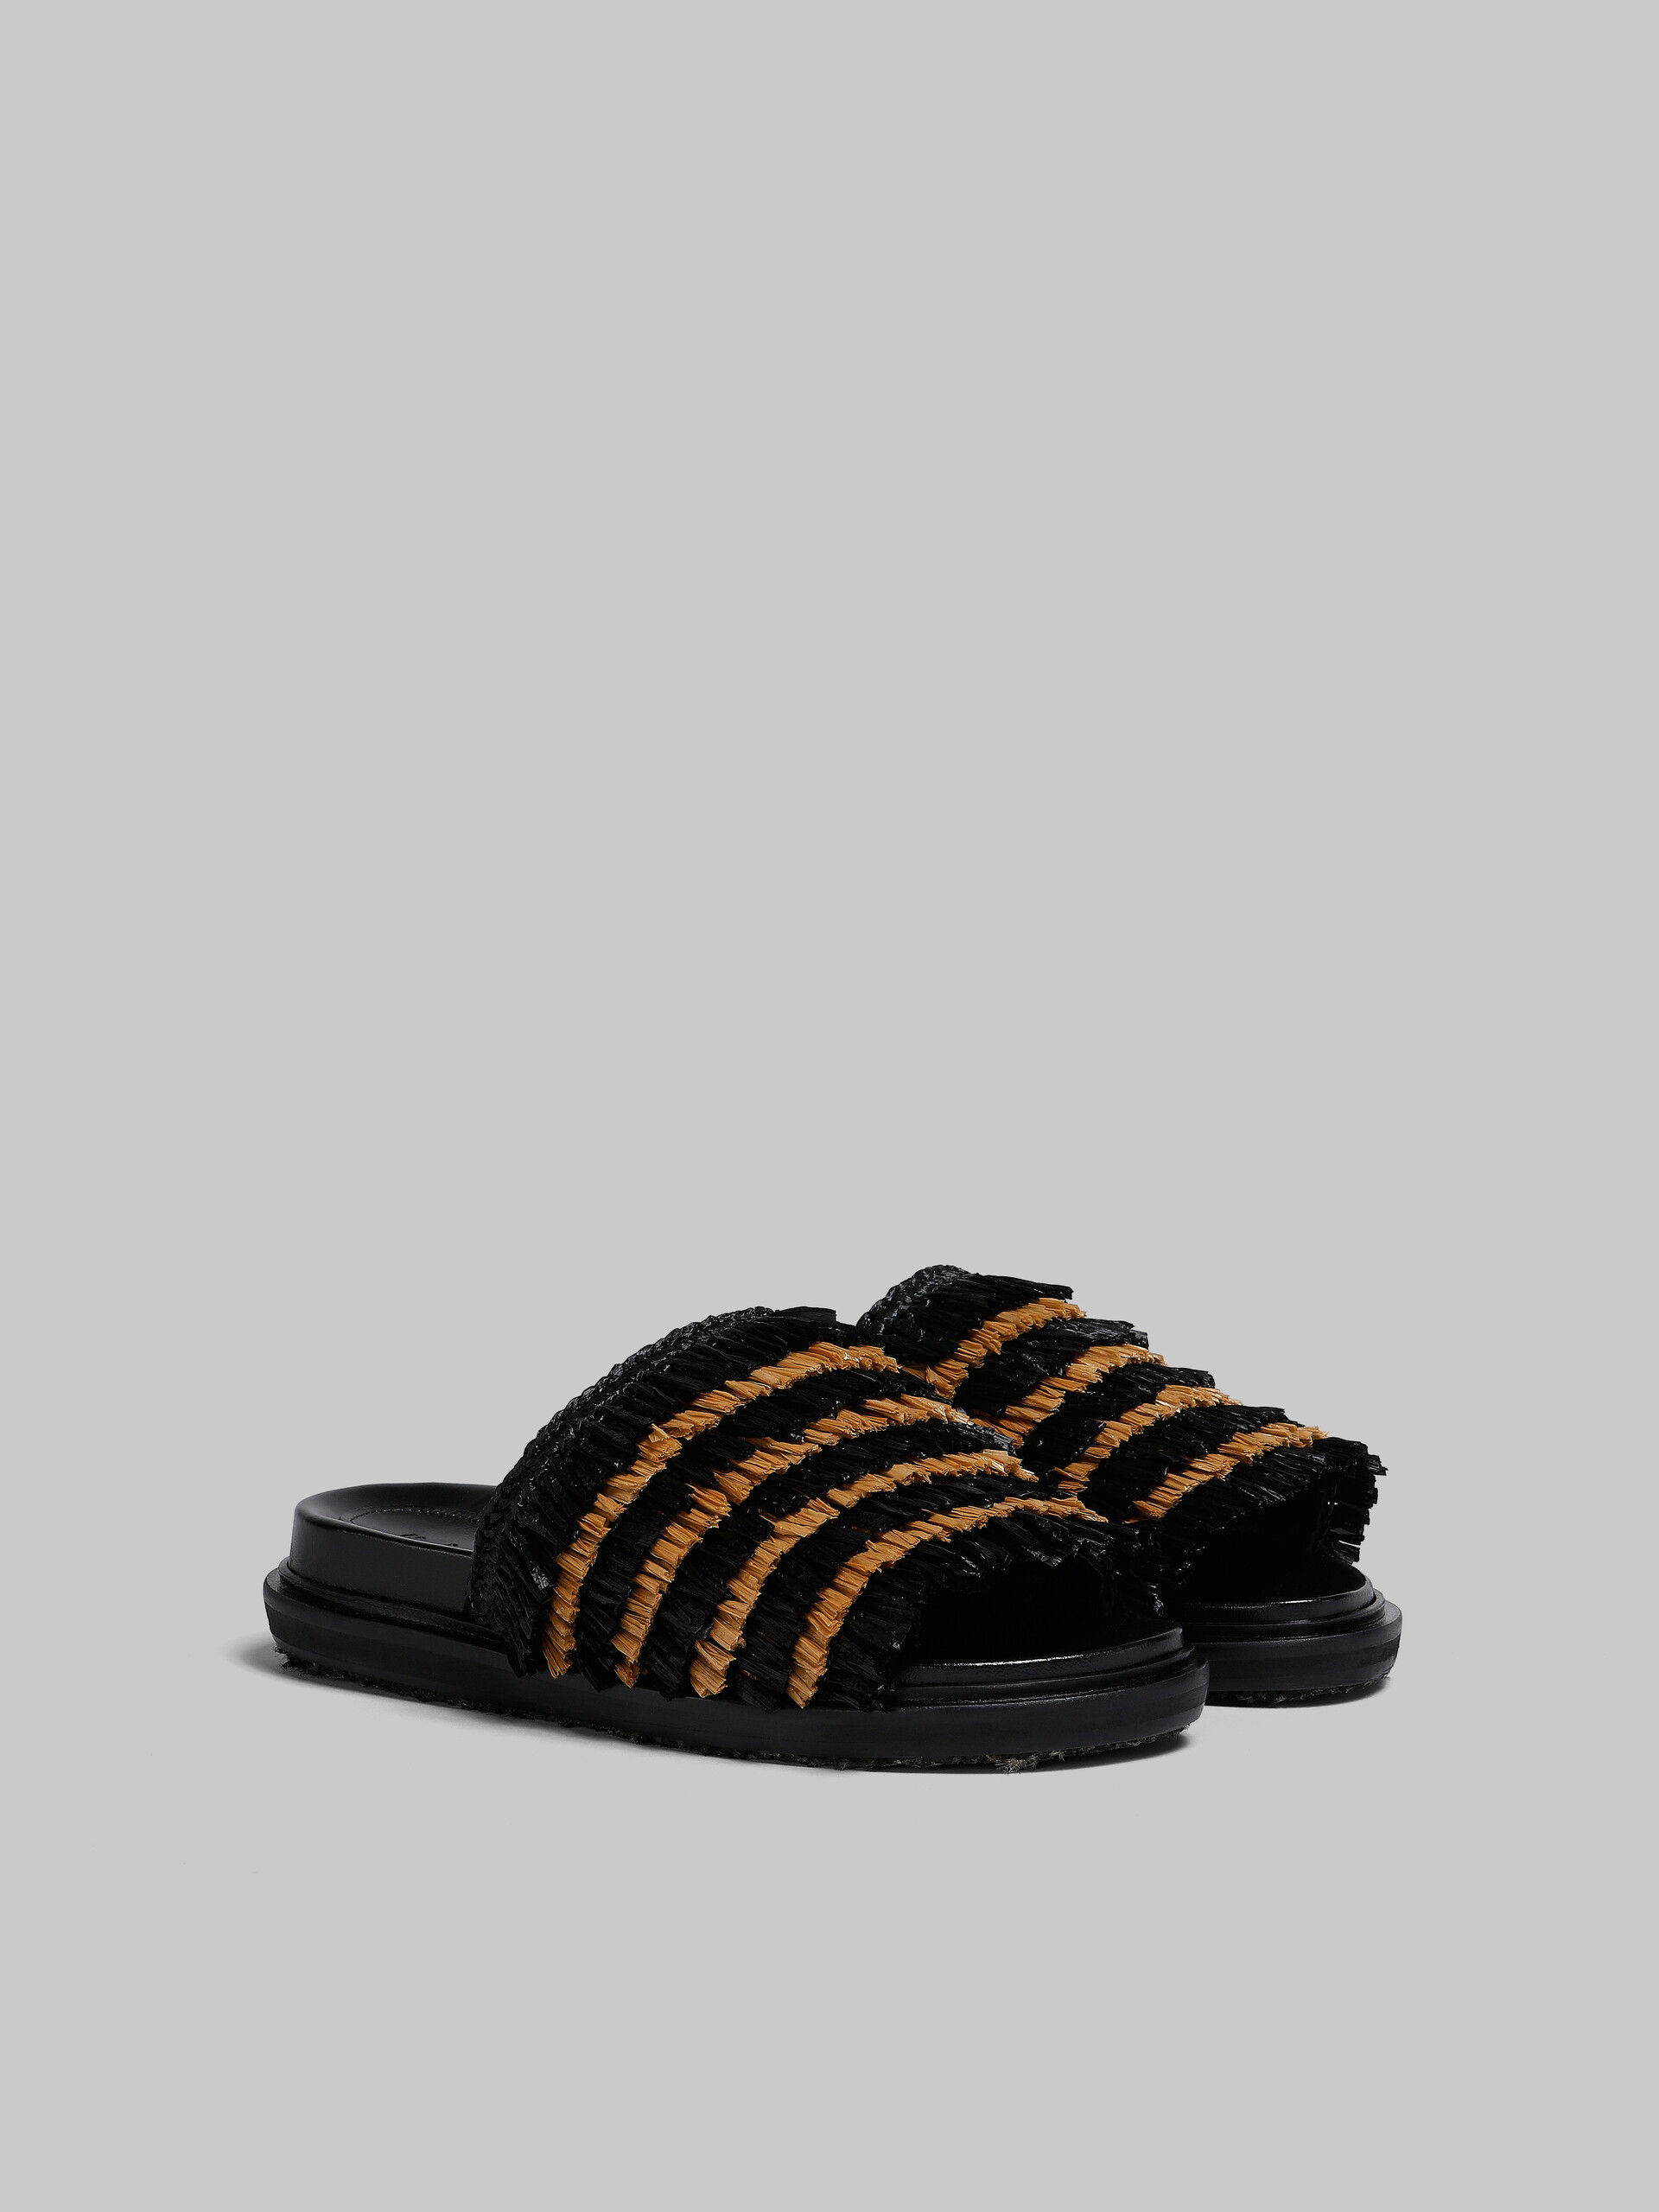 Black fringe slide sandal - Sandals - Image 2